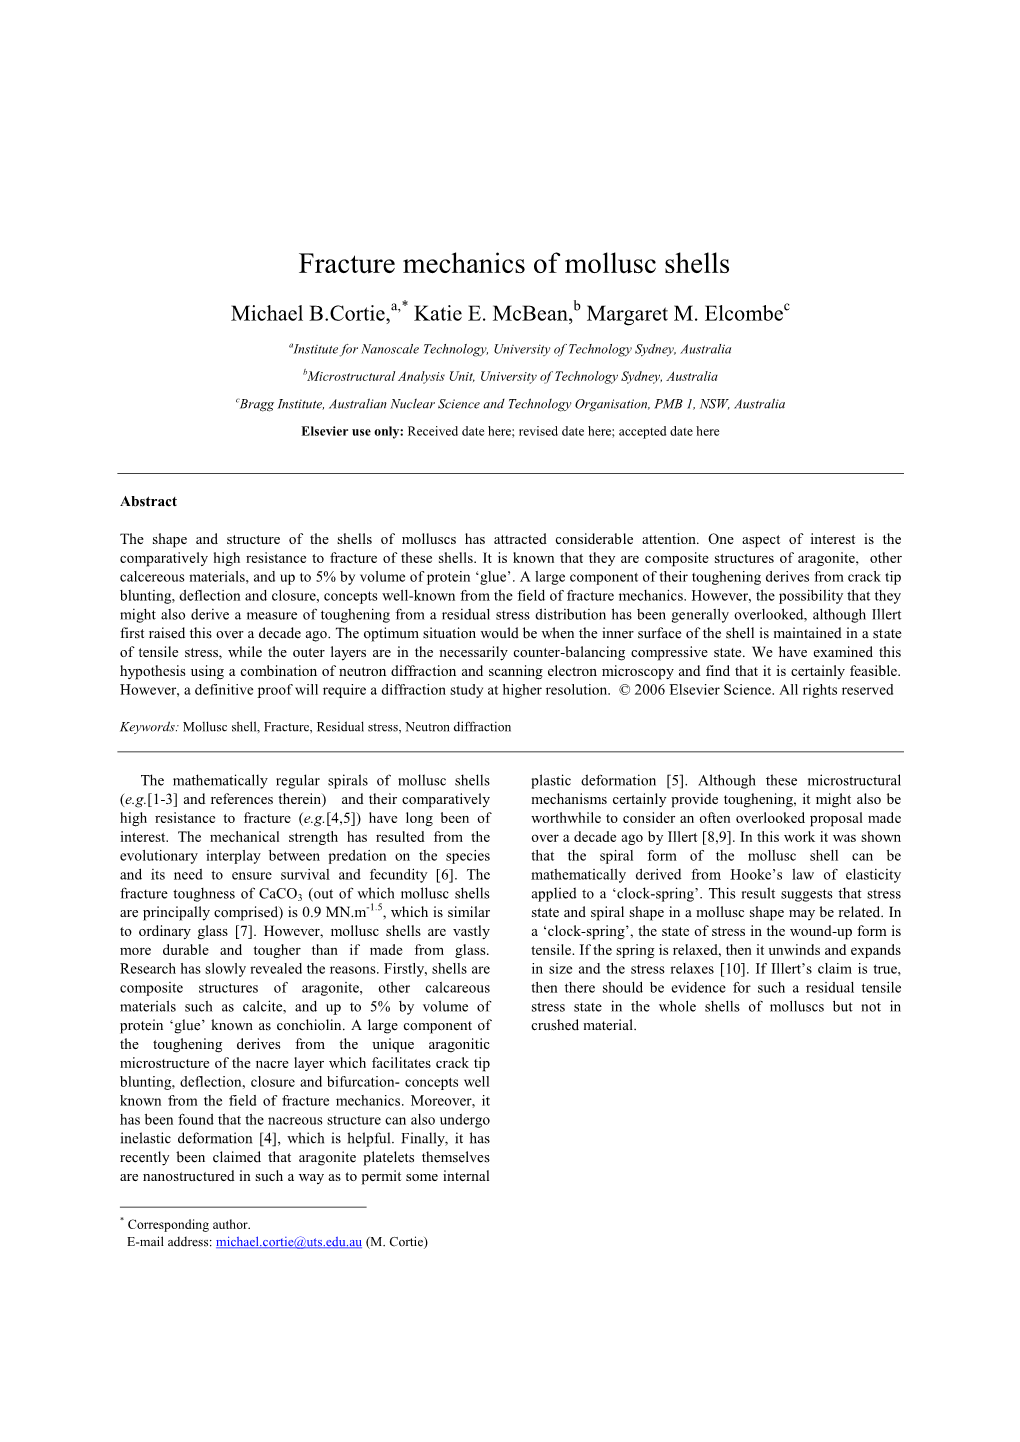 Fracture Mechanics of Mollusc Shells